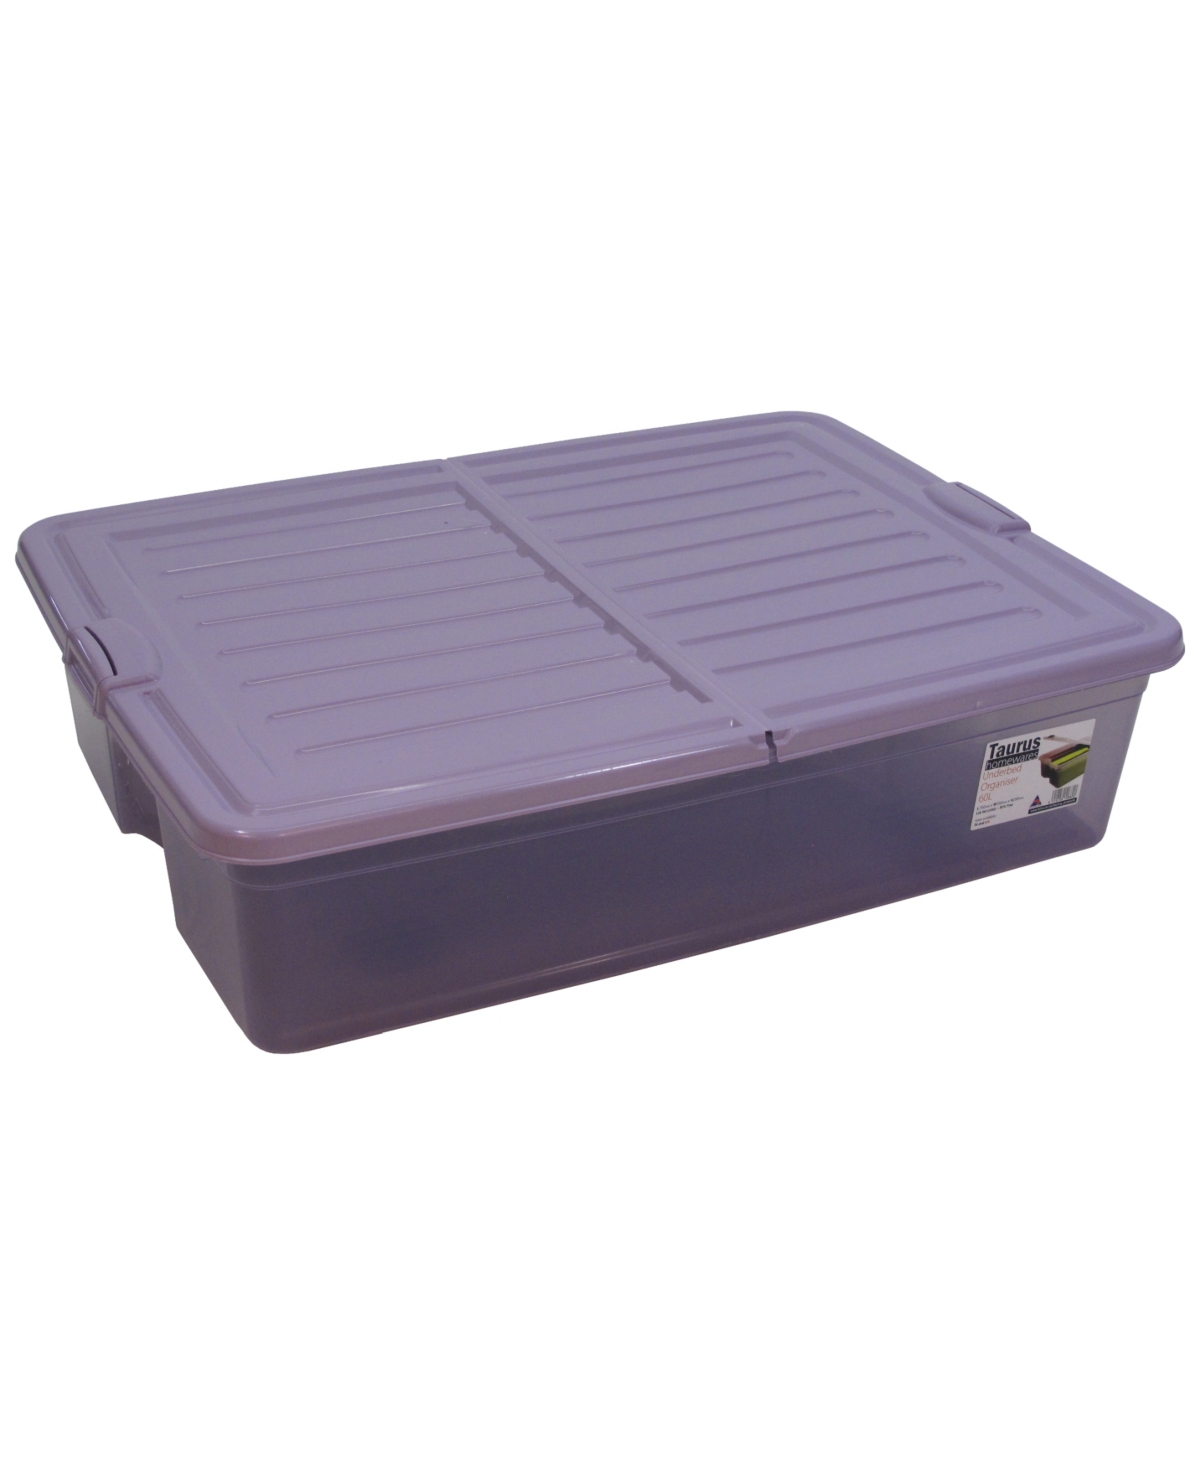 16 Gallon Underbed Storage Organizer - Lavender